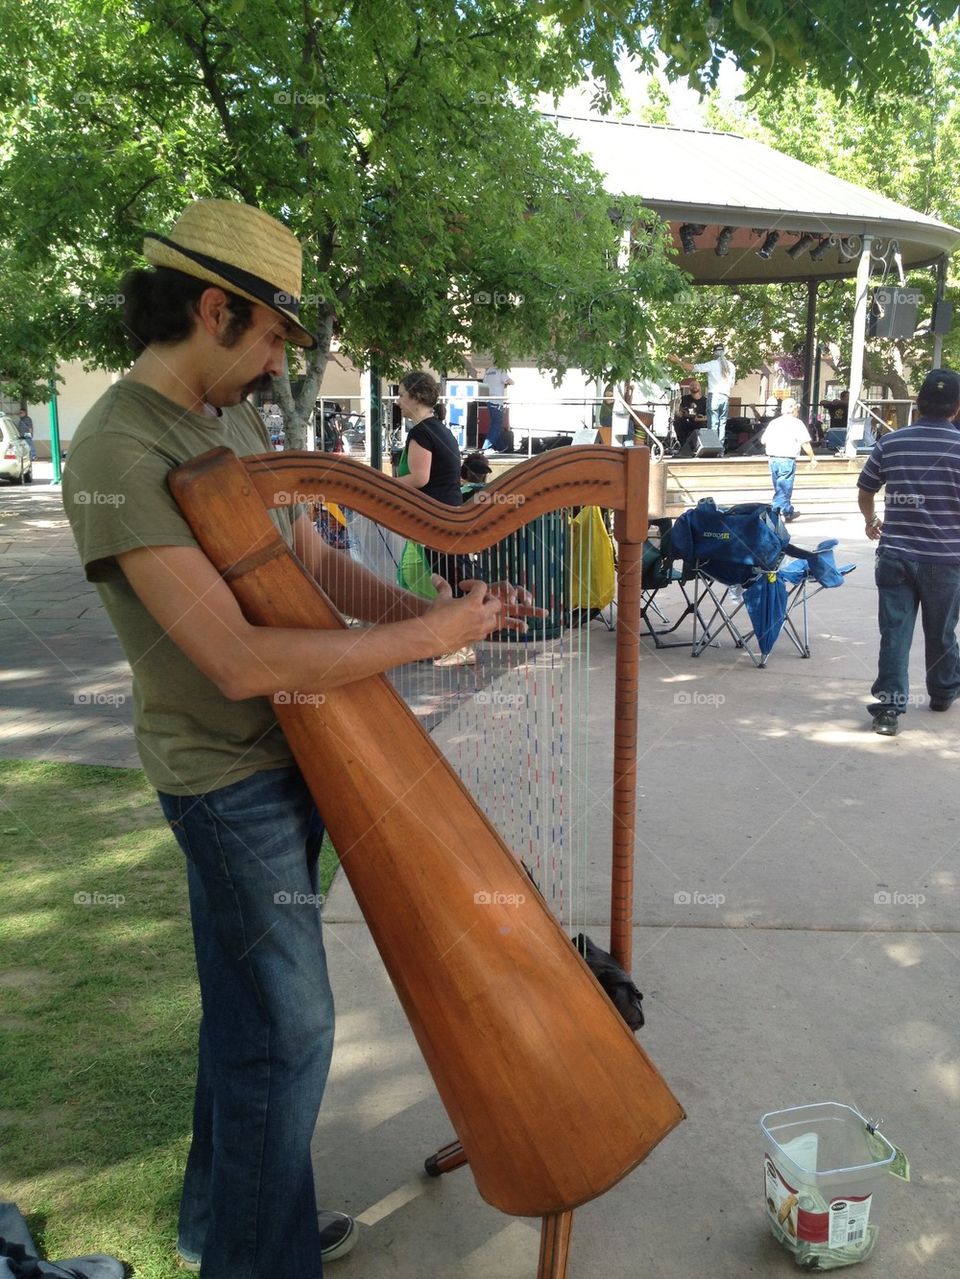 Harp player in Santa Fe